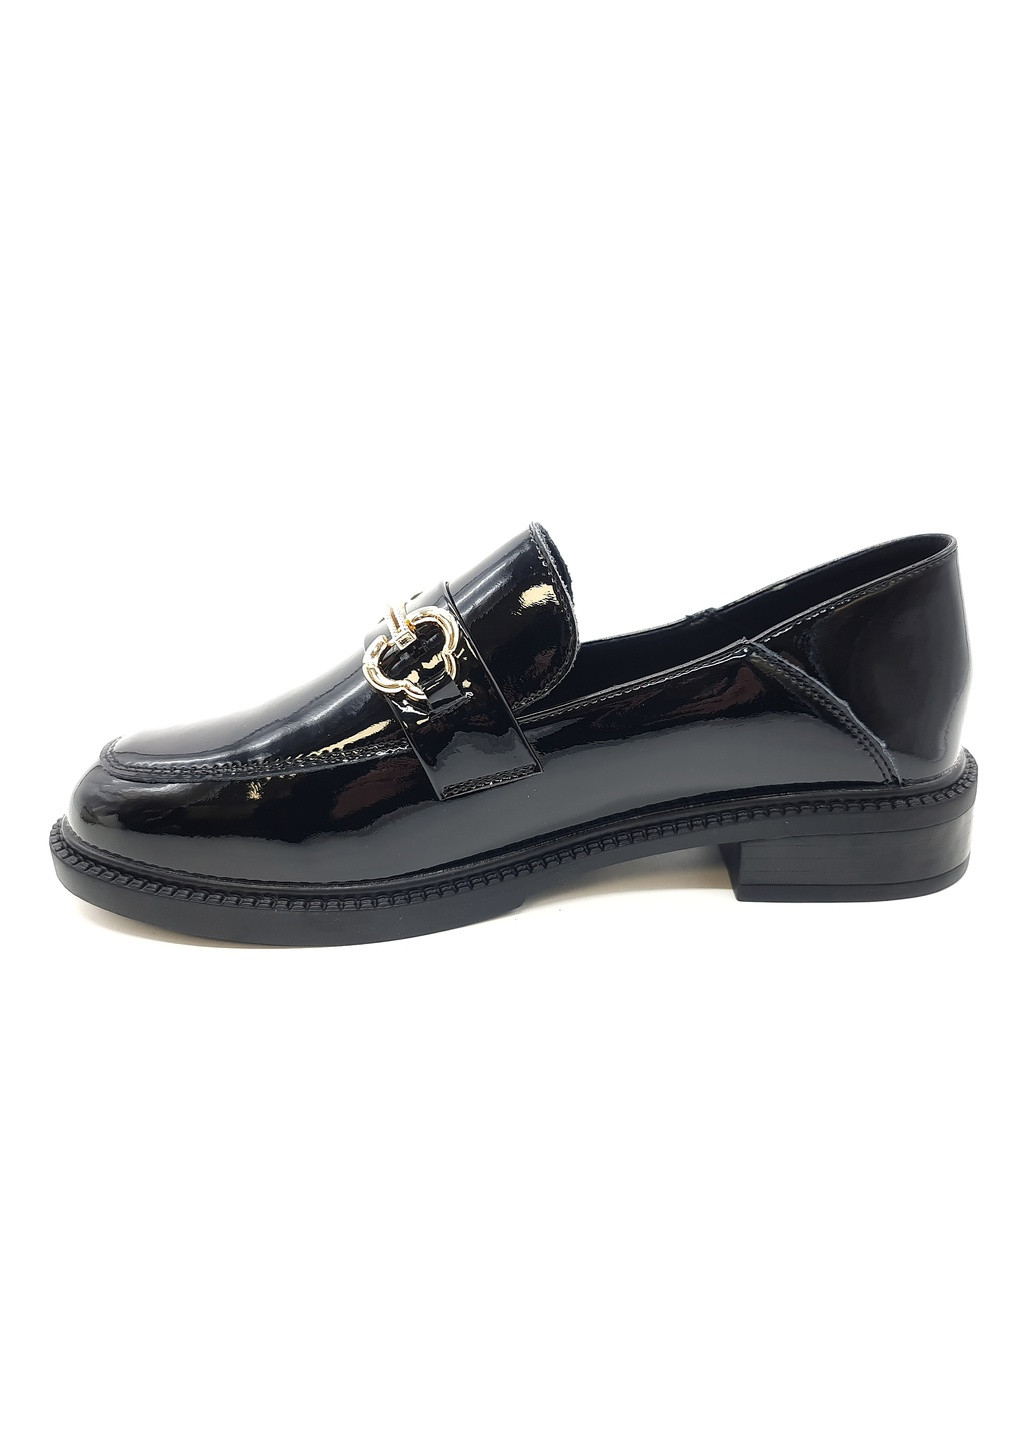 Женские туфли черные лакированная кожа YA-18-4 23 см(р) Yalasou